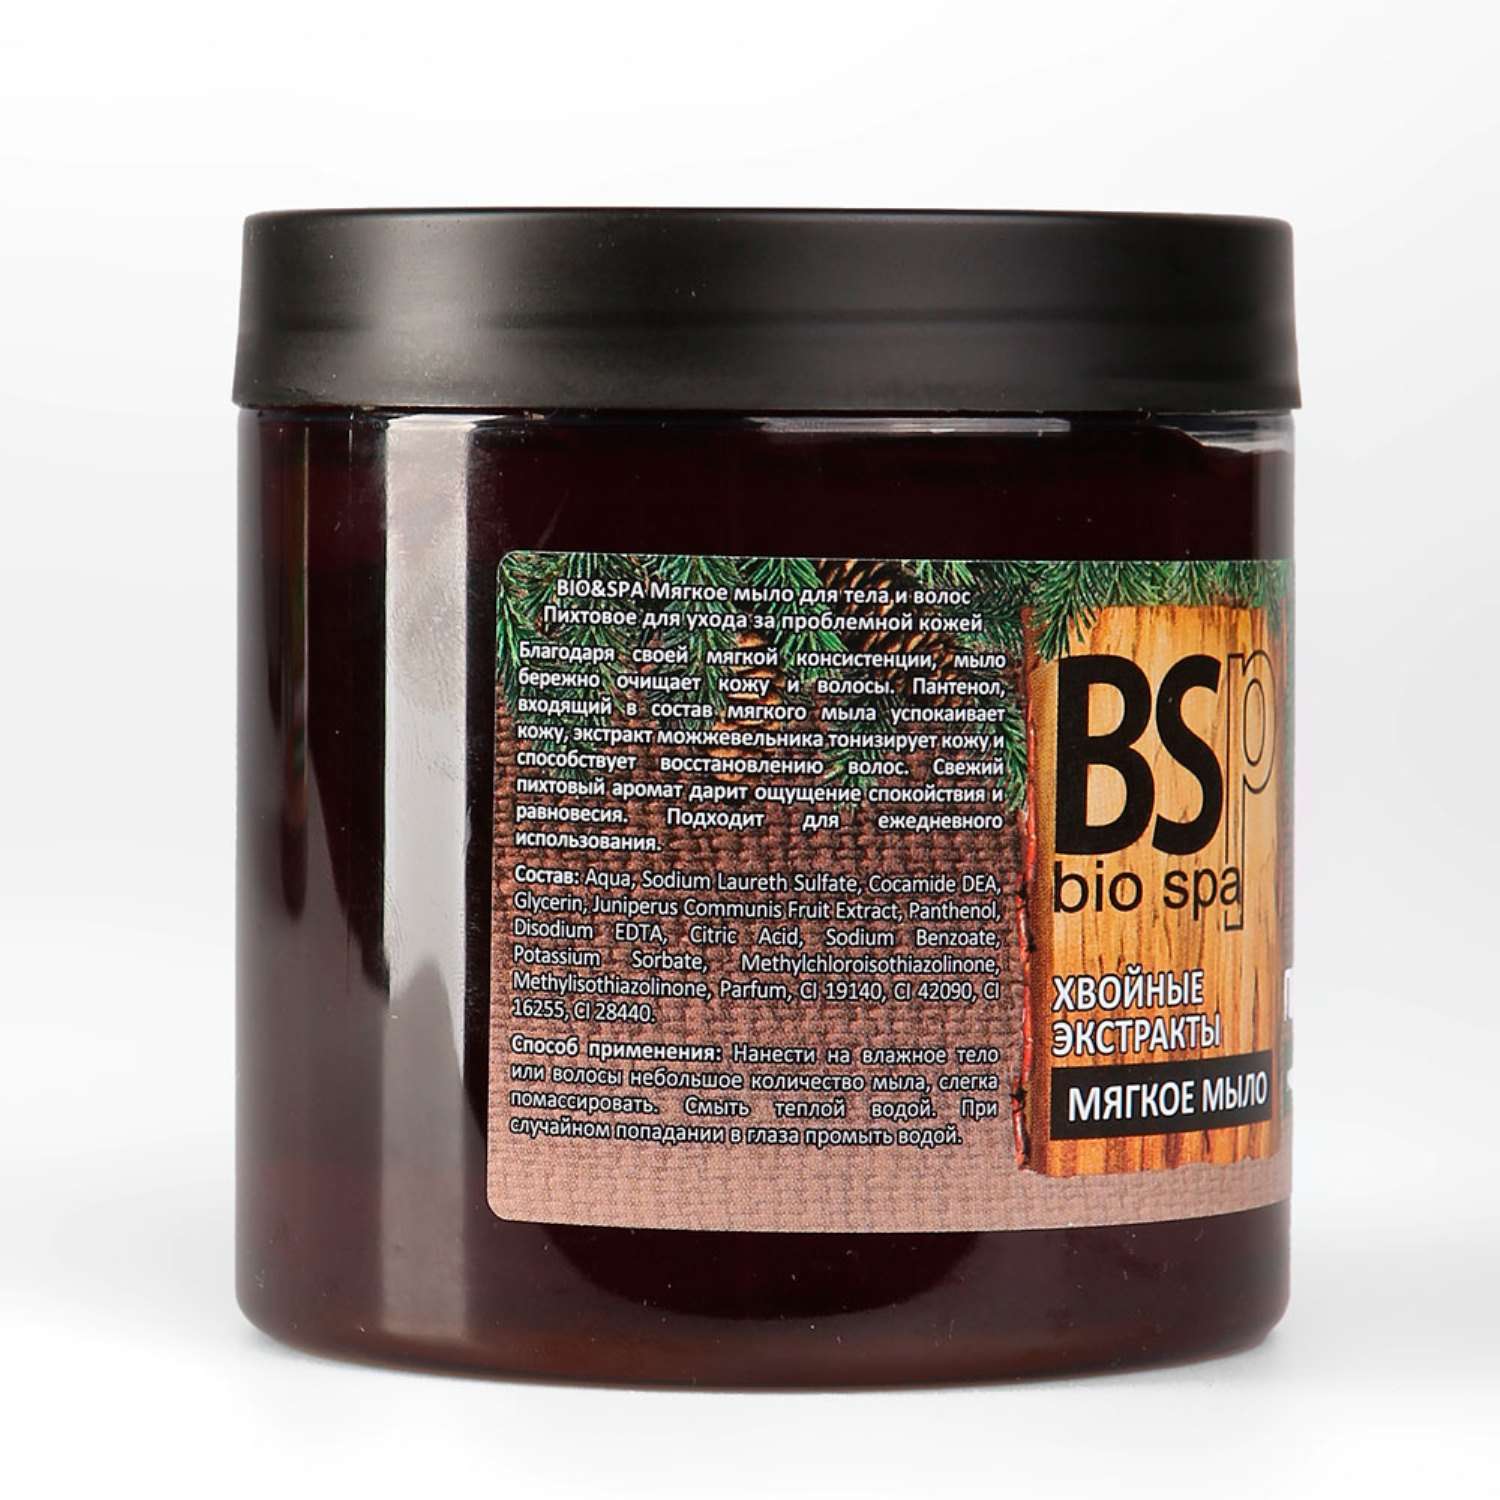 Мыло BSP bio spa мягкое для тела и волос Пихтовое 500 гр - фото 4